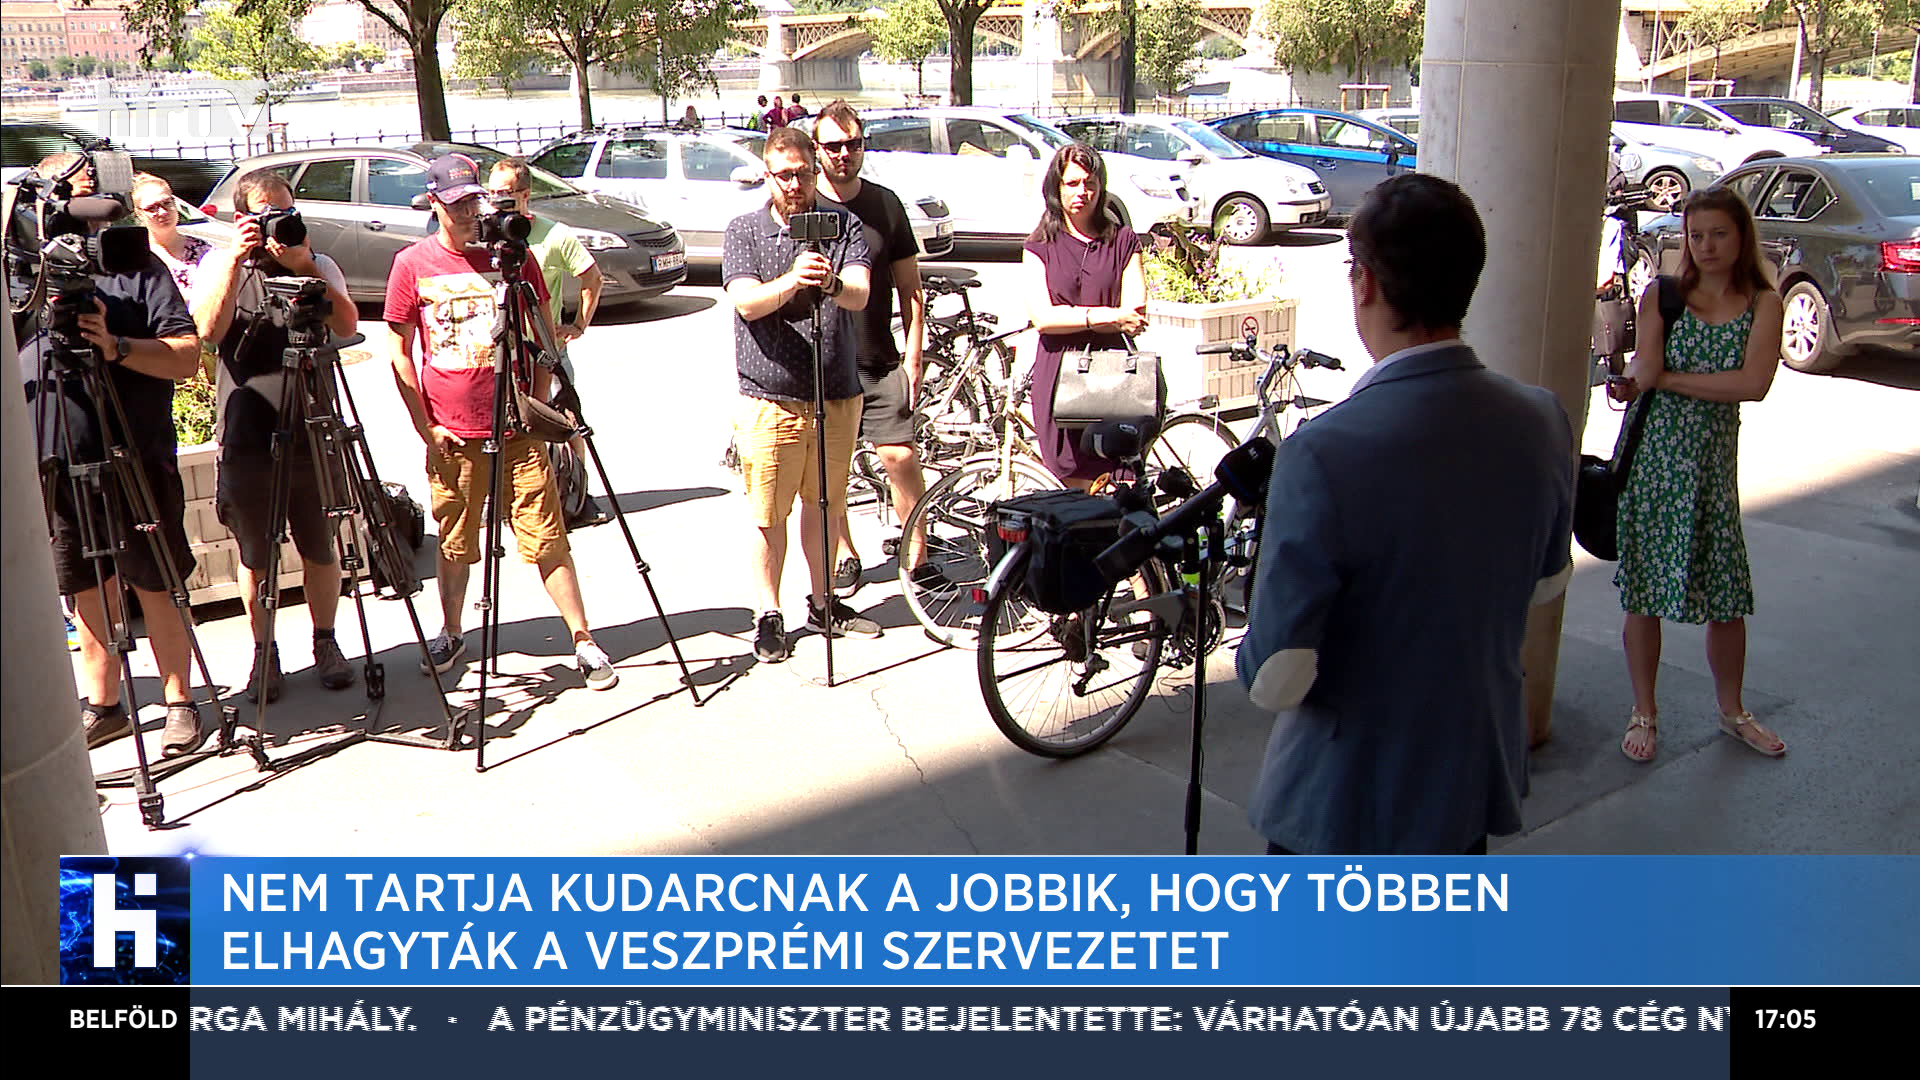 Nem tartja kudarcnak a Jobbik, hogy többen elhagyták a veszprémi szervezetet